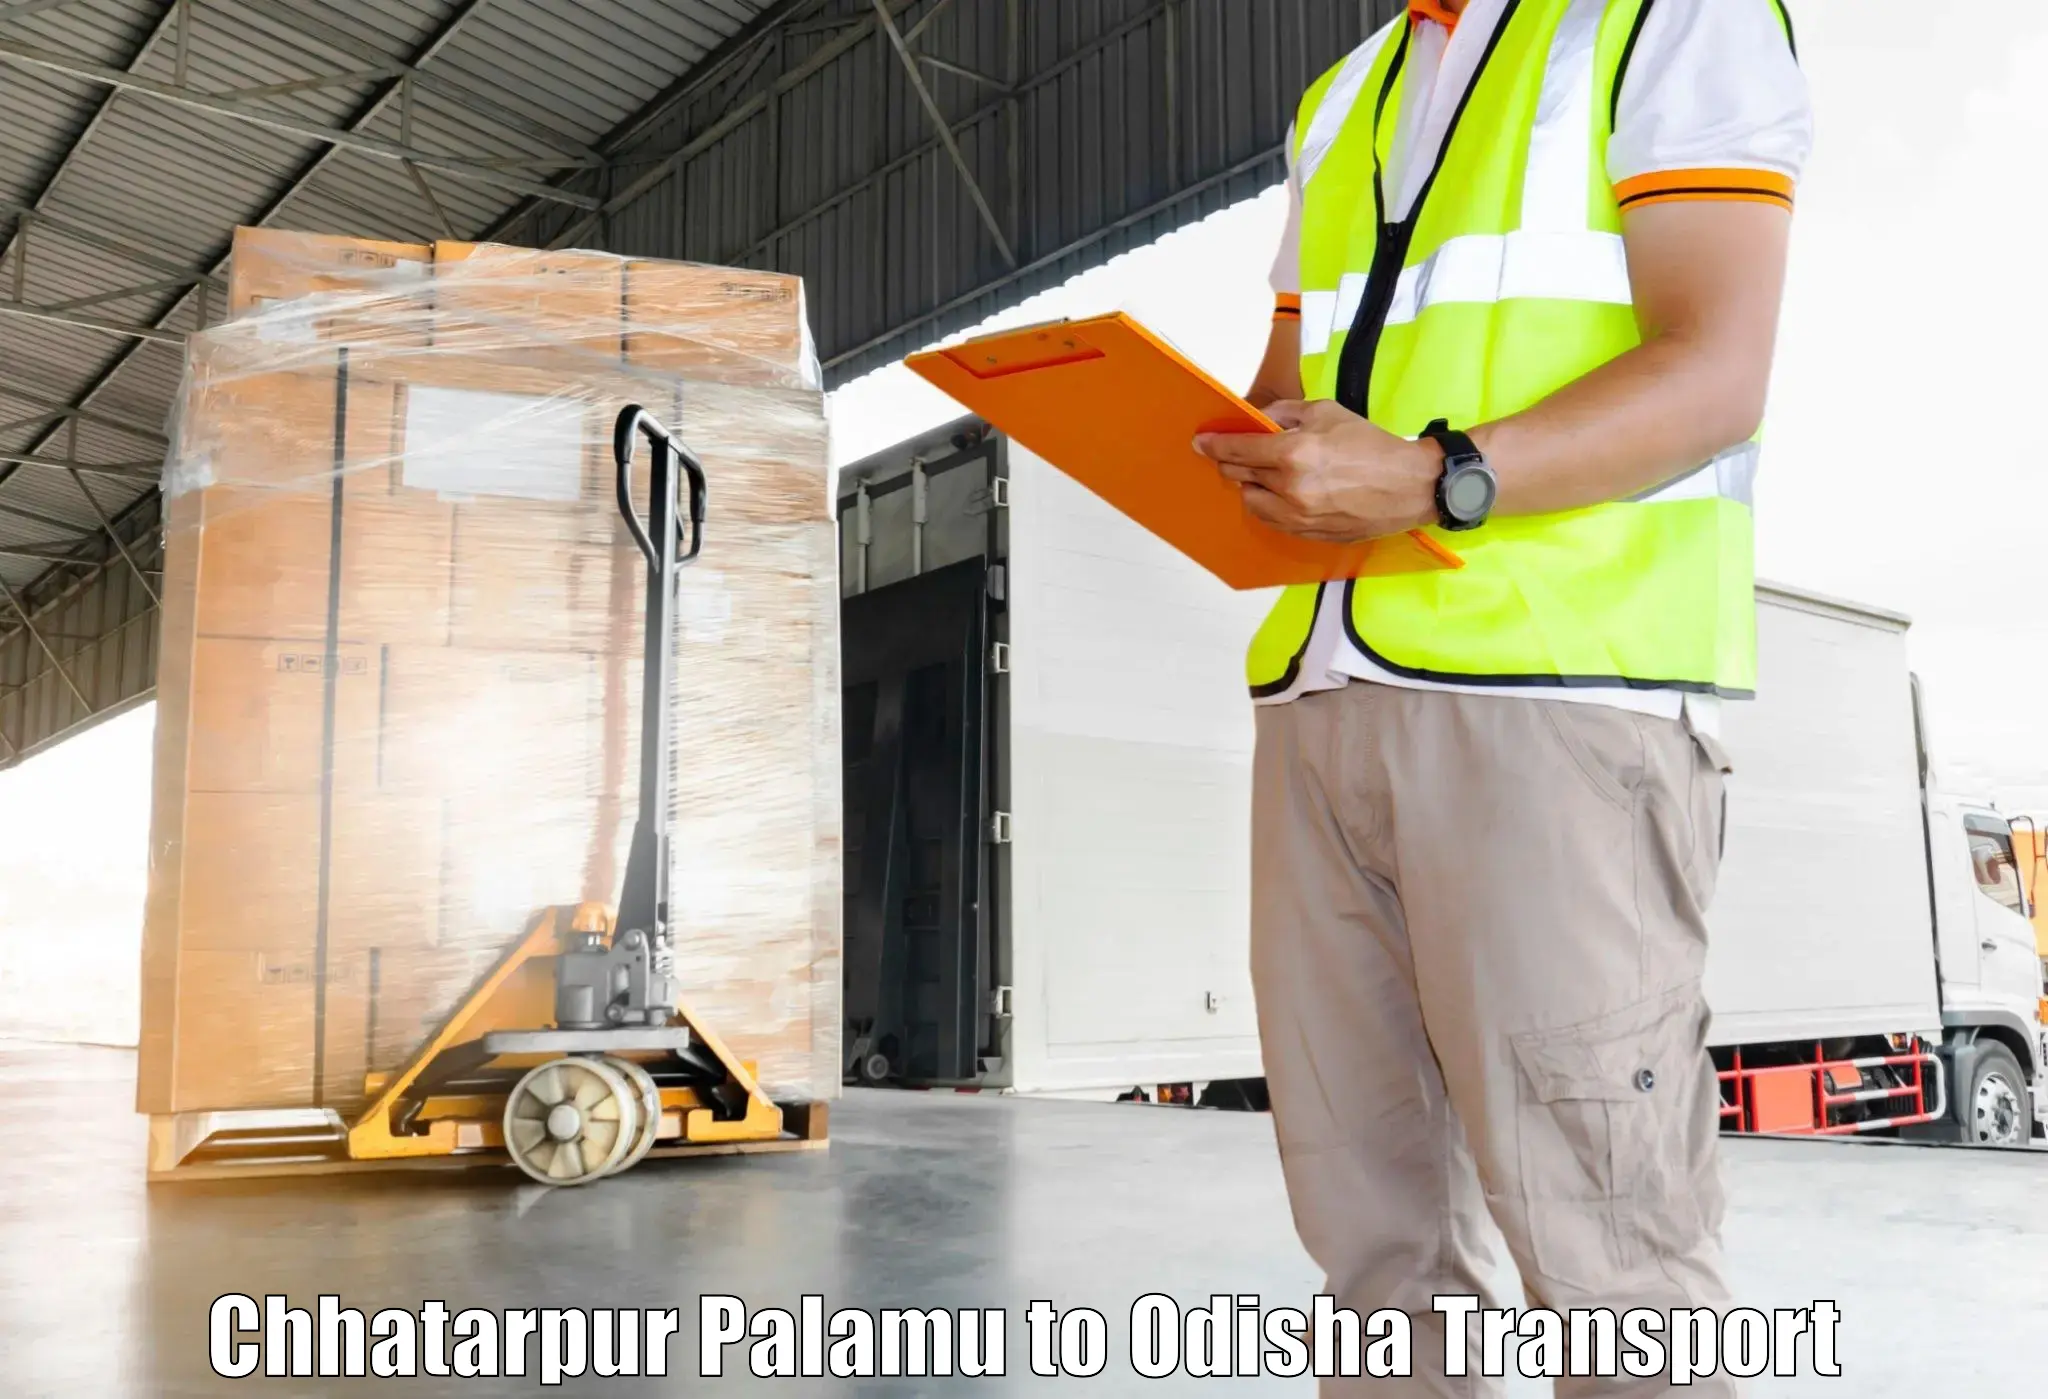 Transport shared services in Chhatarpur Palamu to Melchhamunda